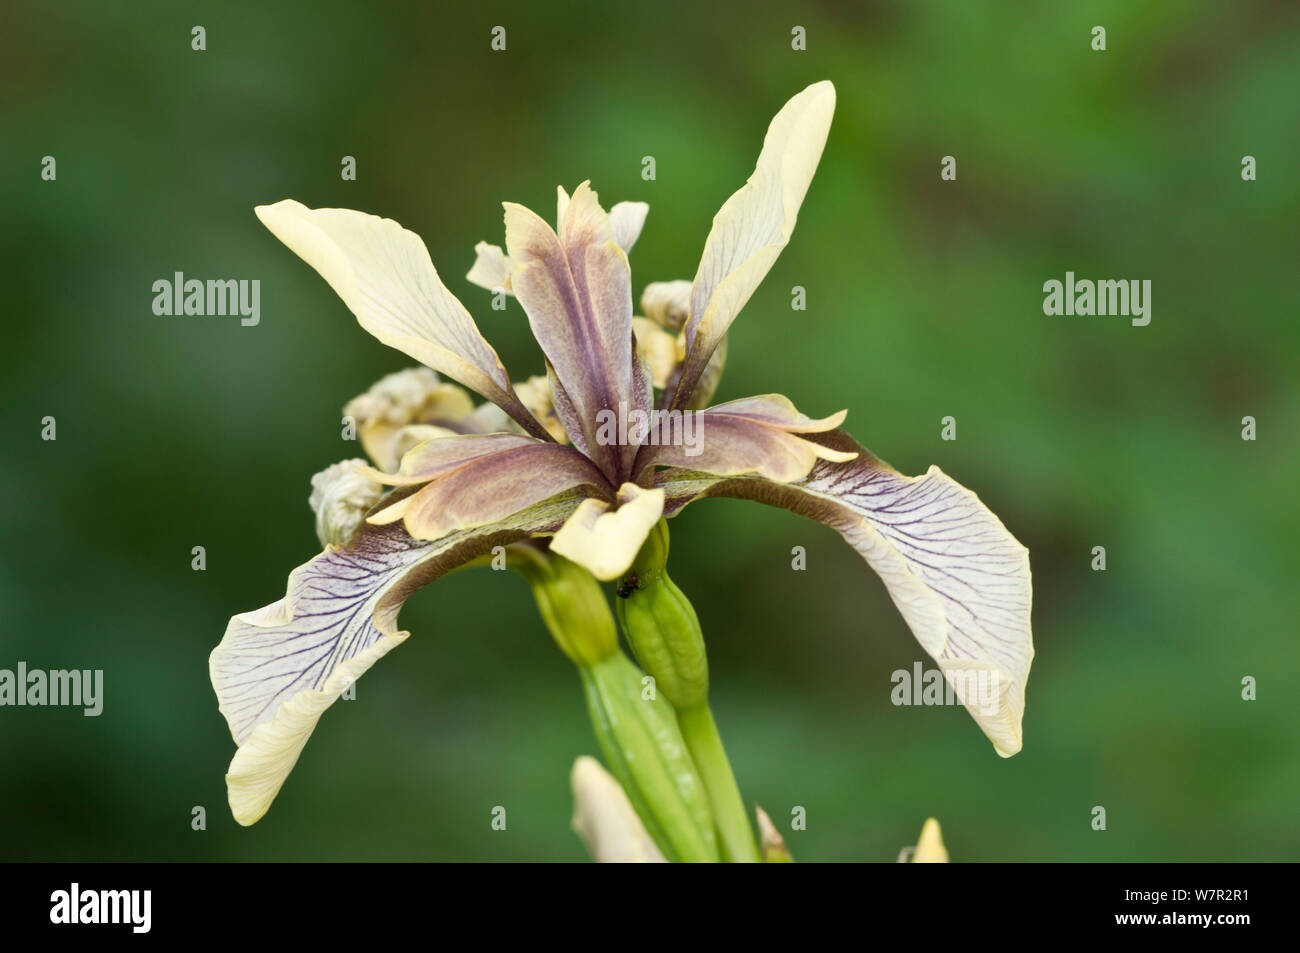 Iris puzzolente/Gladdon (Iris foetidissima) in fiore, Sugano, nei pressi di Orvieto, Umbria, Italia, Maggio Foto Stock